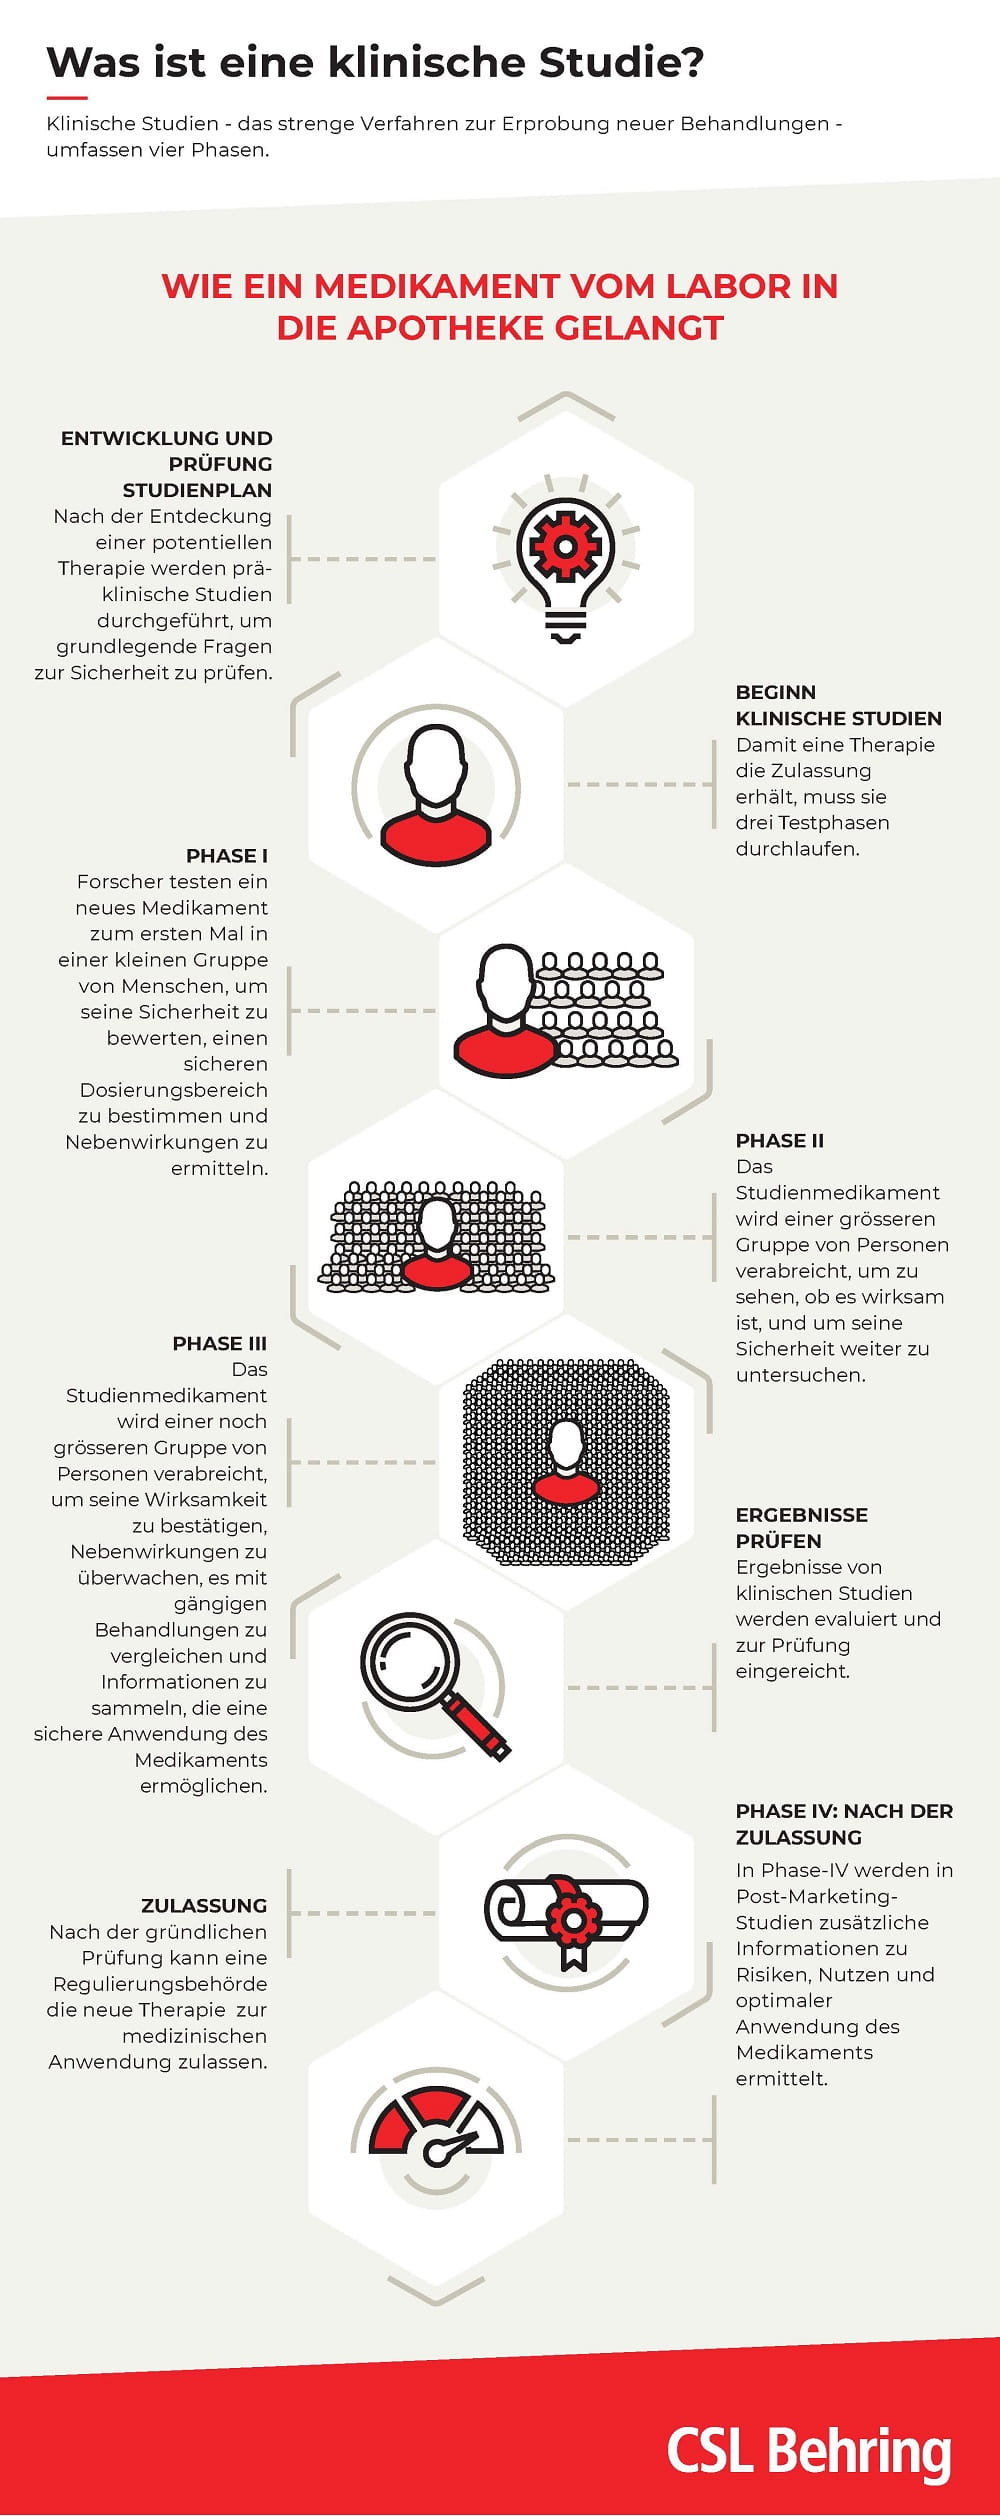 Infografik "Was ist eine klinische Studie?"